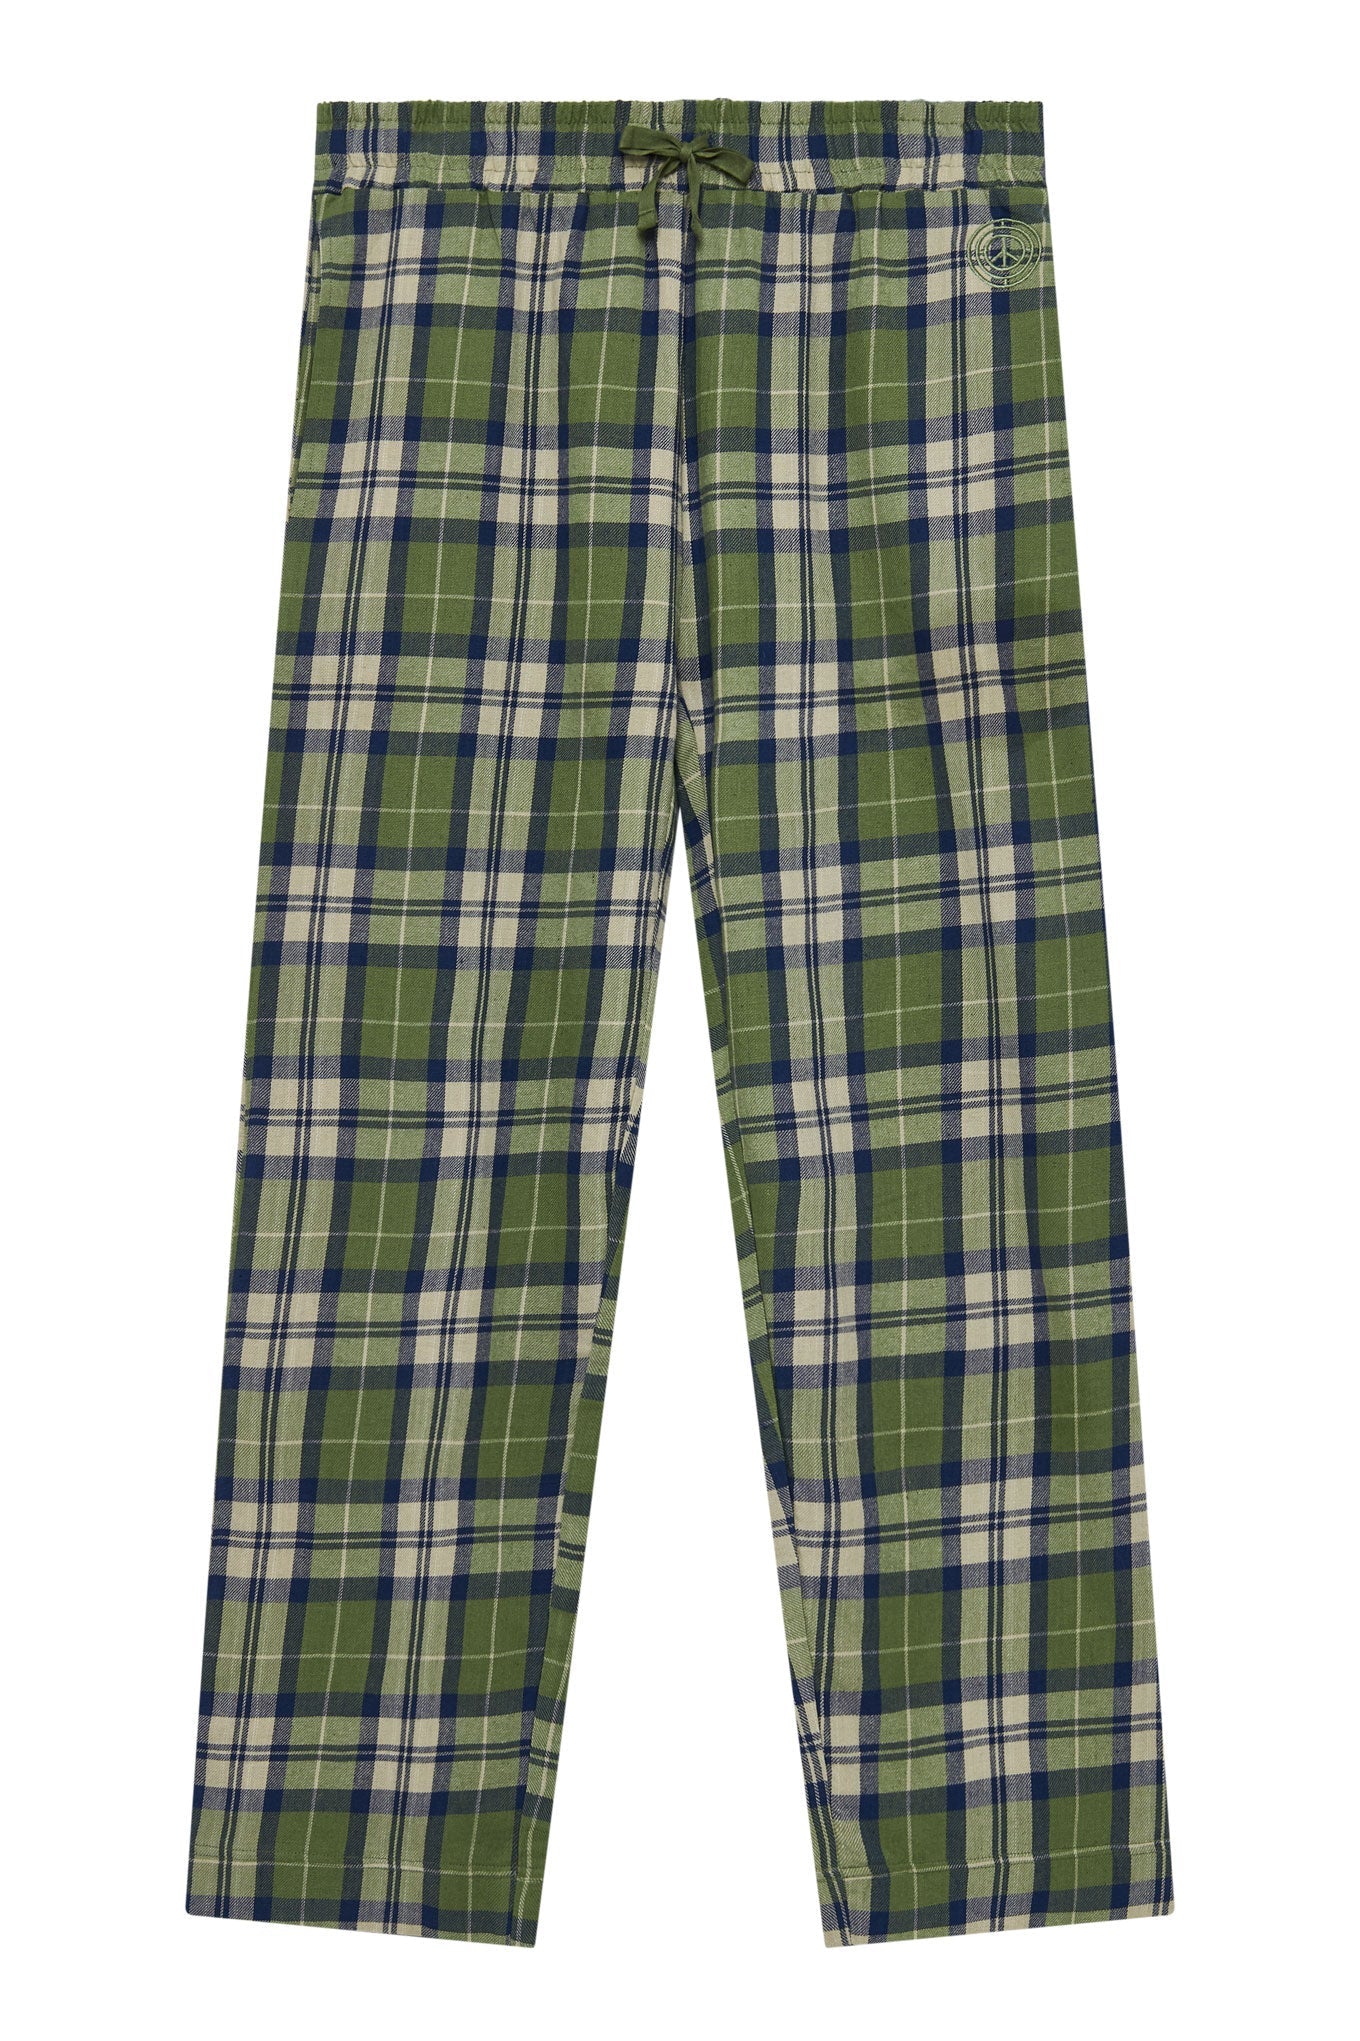 Green pajama set JIM JAM made from 100% organic cotton from Komodo 